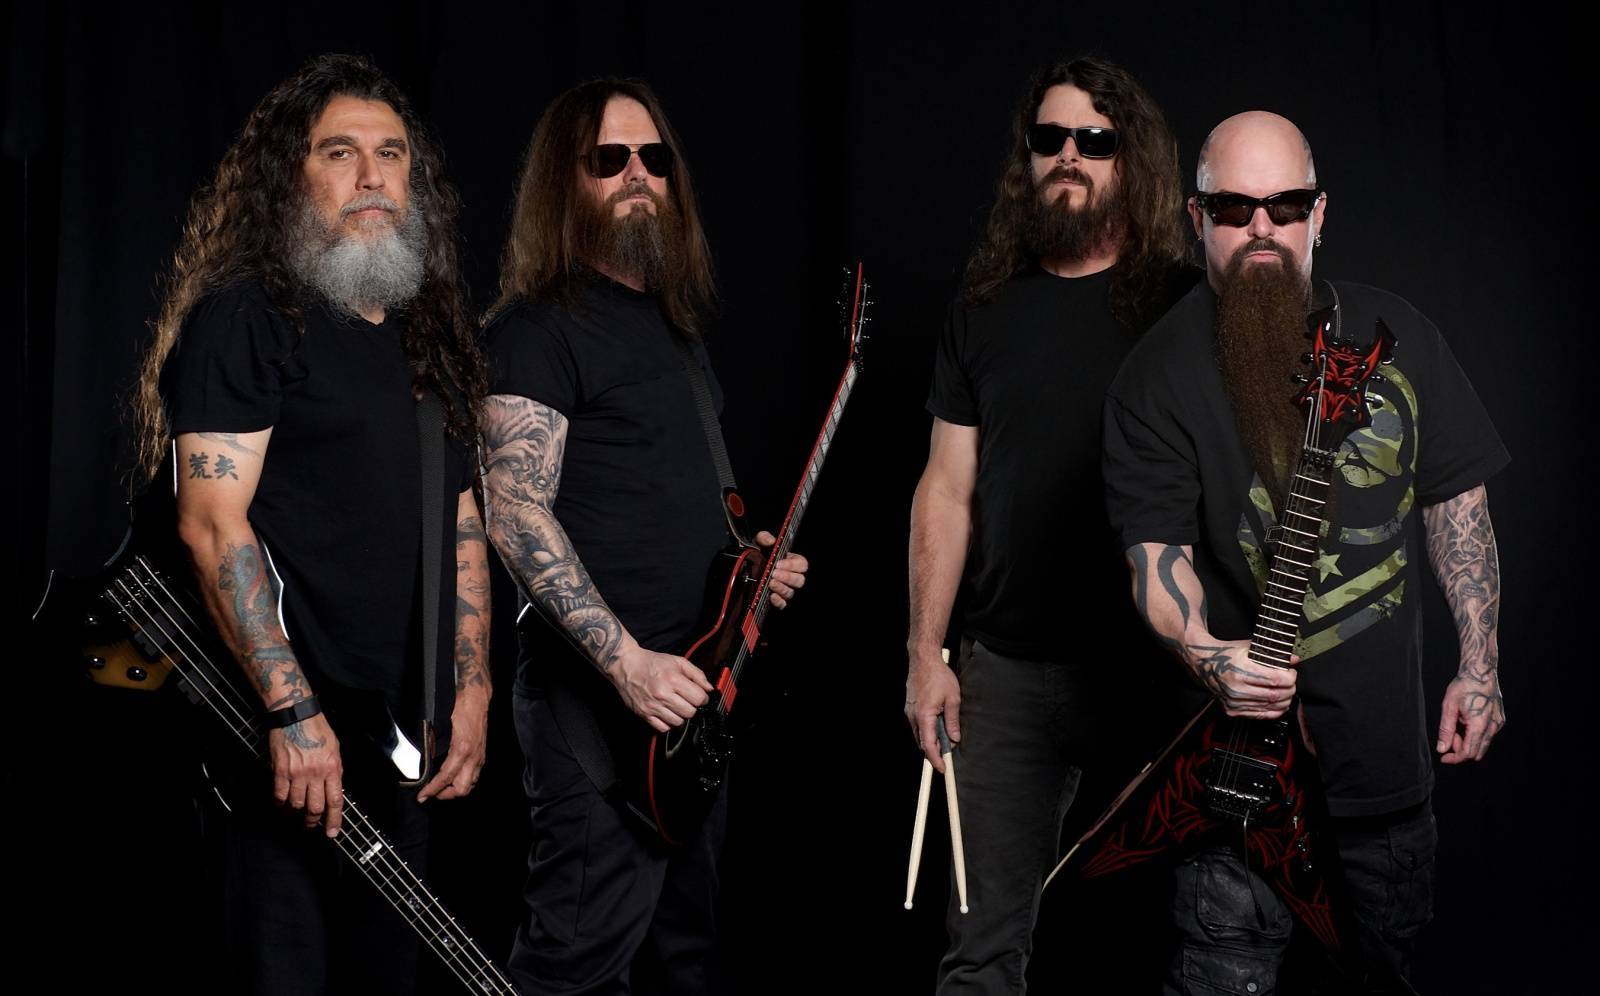 RECENZE: Slayer v zajetí krve a brutality - fascinující loučení titánů thrash metalu ve filmu The Repentless Killogy